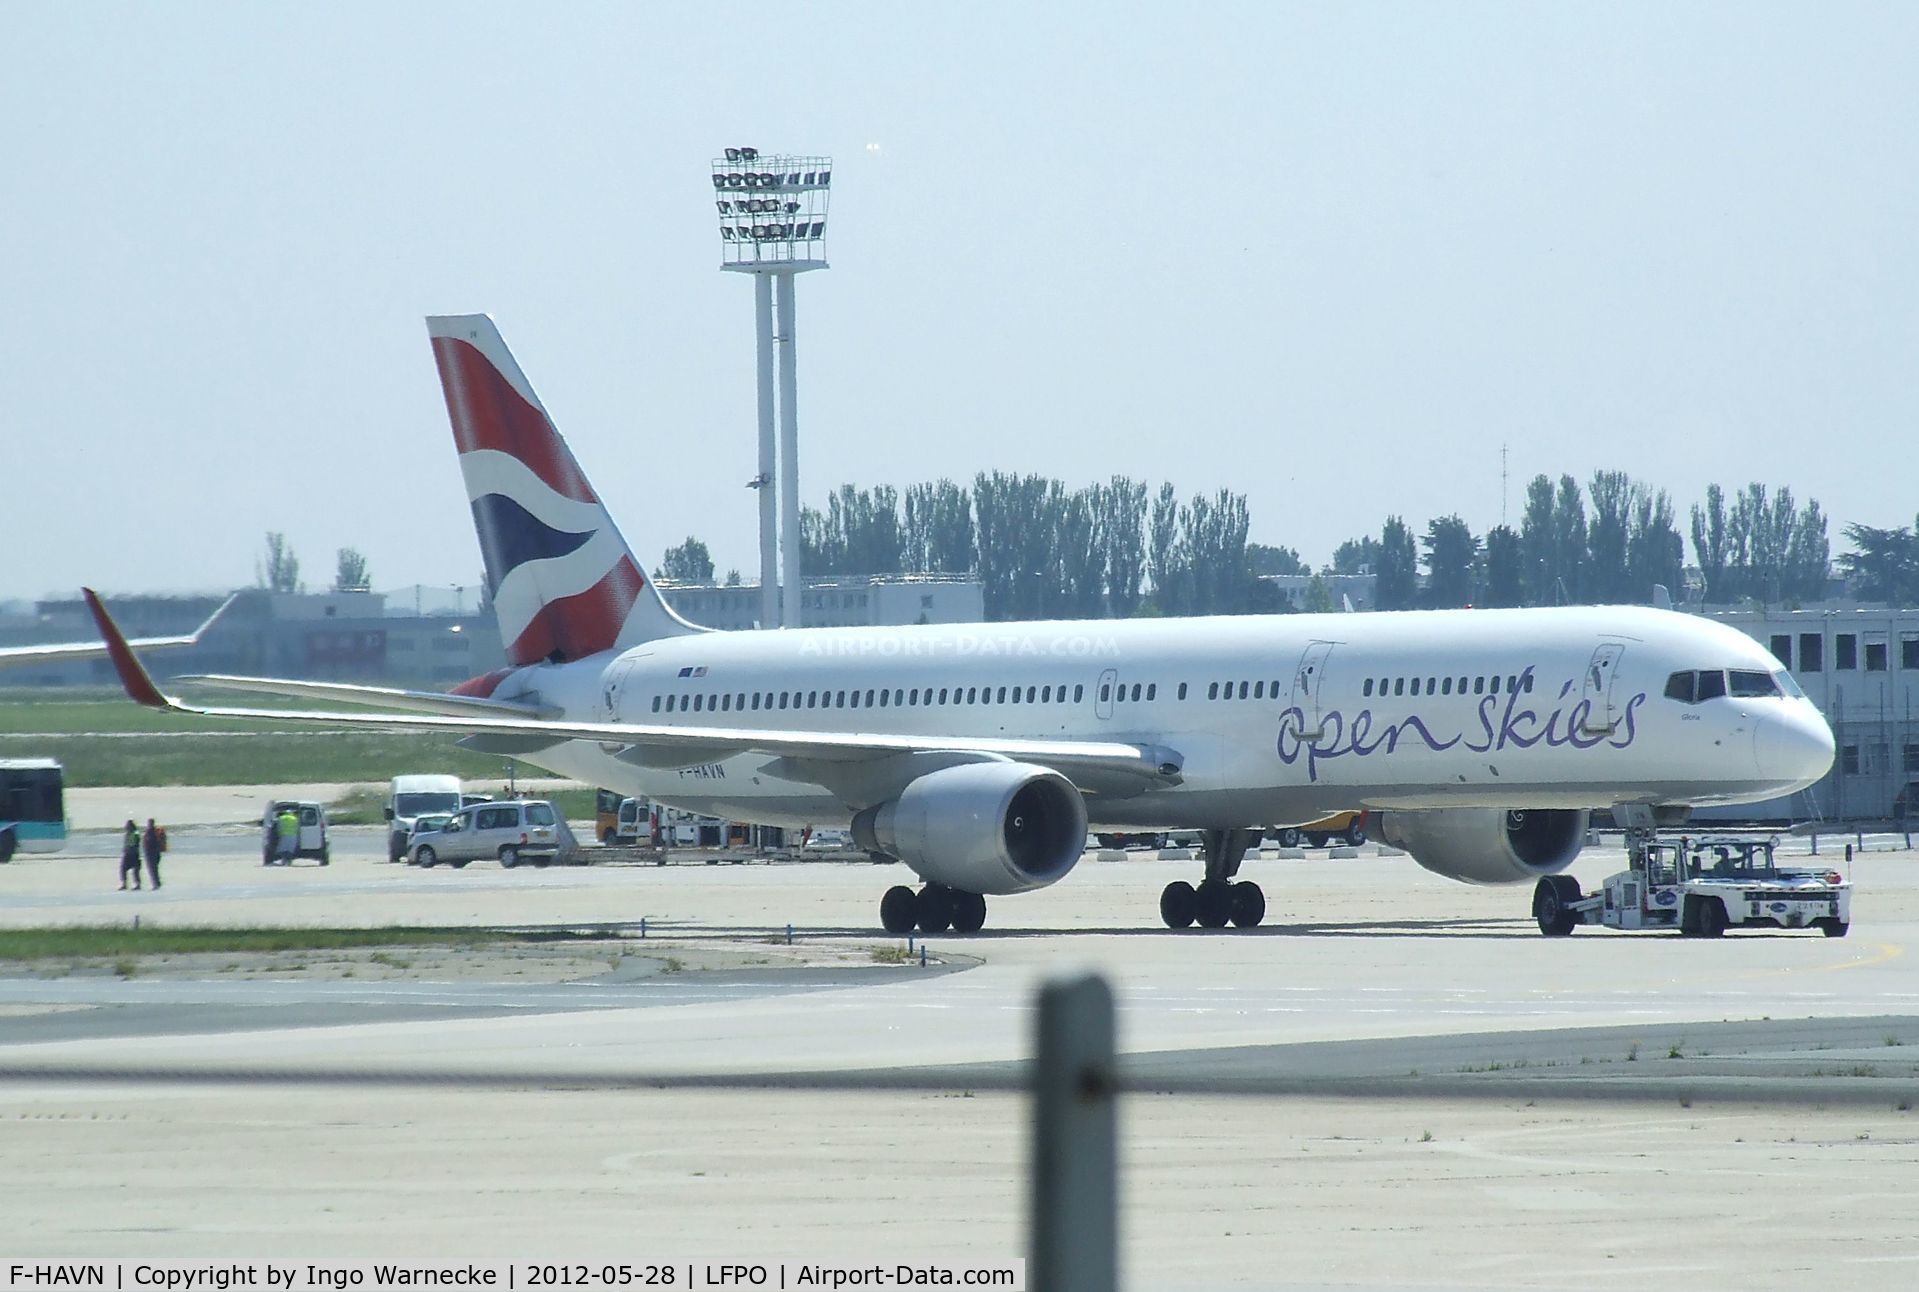 F-HAVN, 1991 Boeing 757-230 C/N 25140, Boeing 757-230 of British Airways open skies at Paris-Orly airport